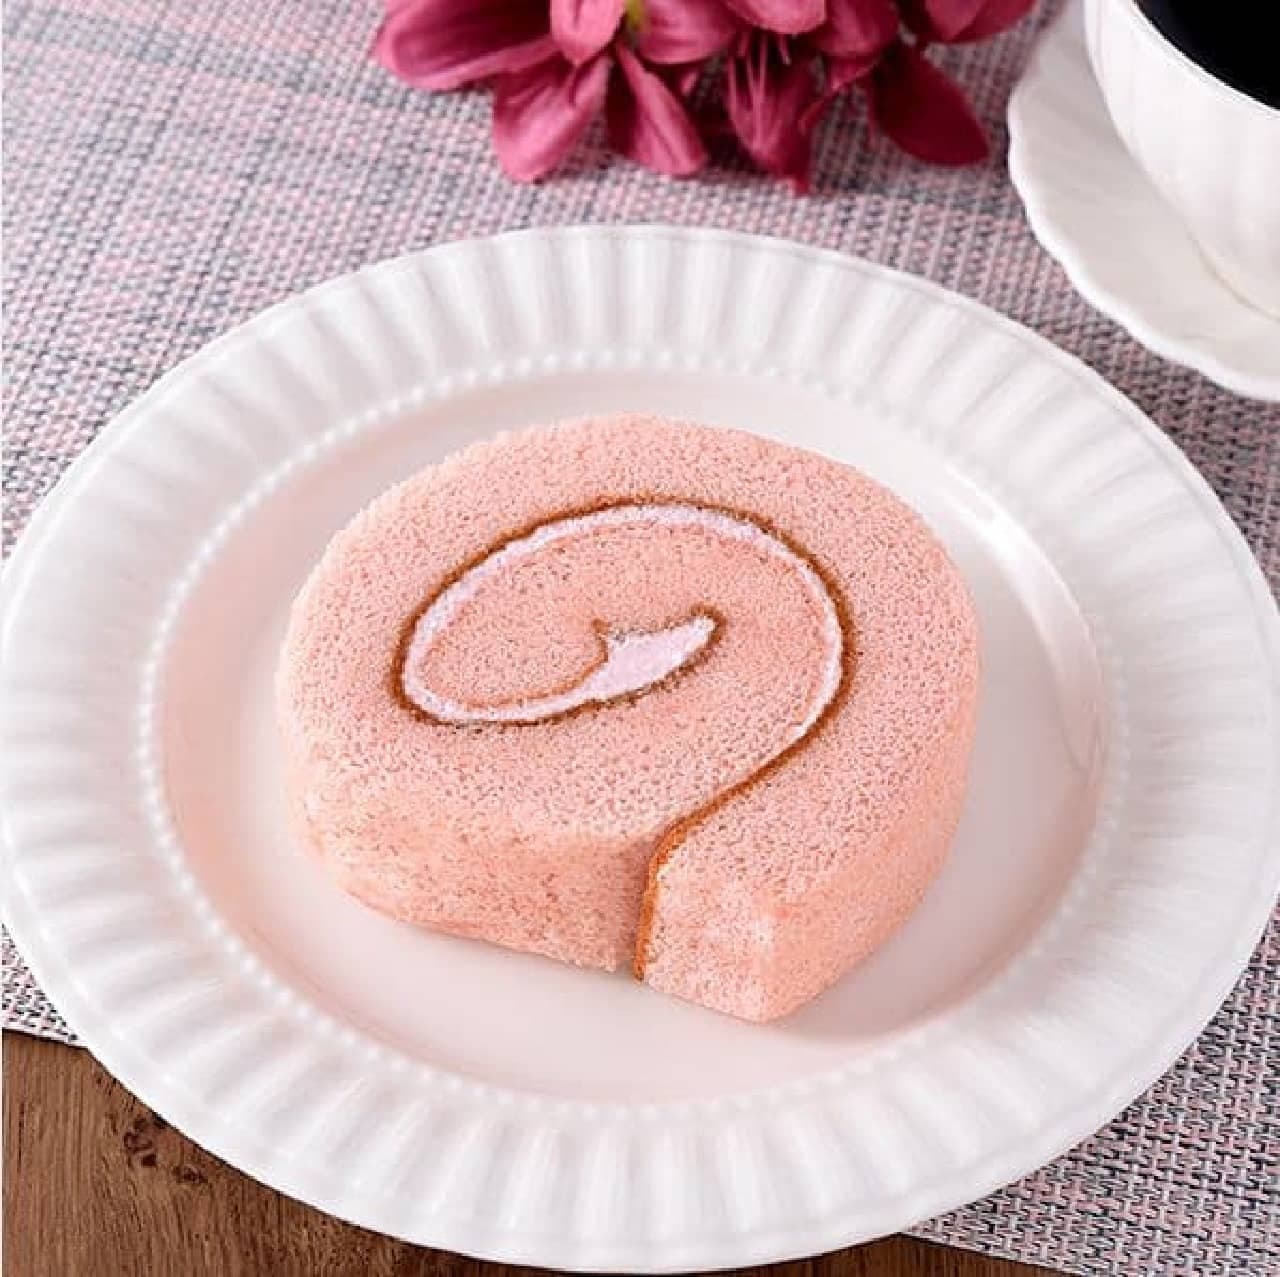 ファミリーマート「桜のロールケーキ」